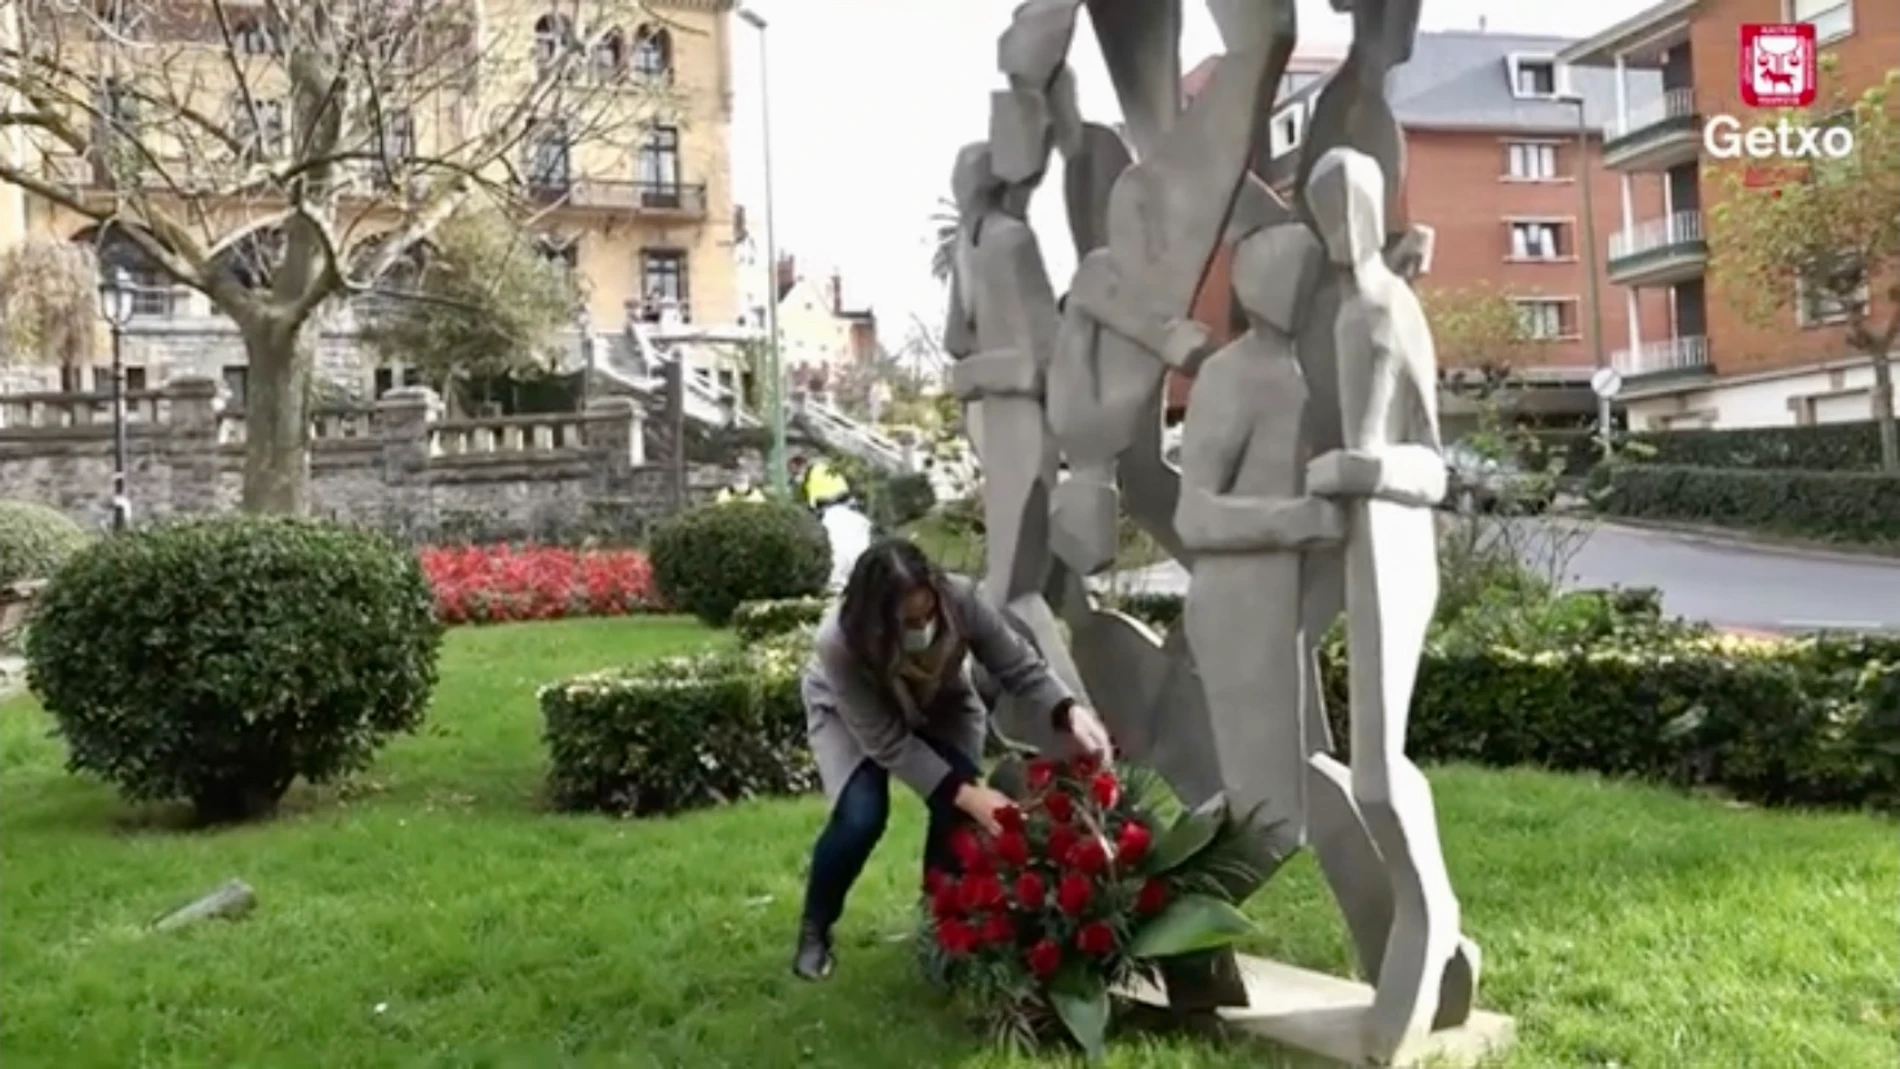 La alcaldesa de Guetxo, Amaia Agirrre deposita un ramo de flores al pie de la escultura ubicada en la plaza de San Ignacio